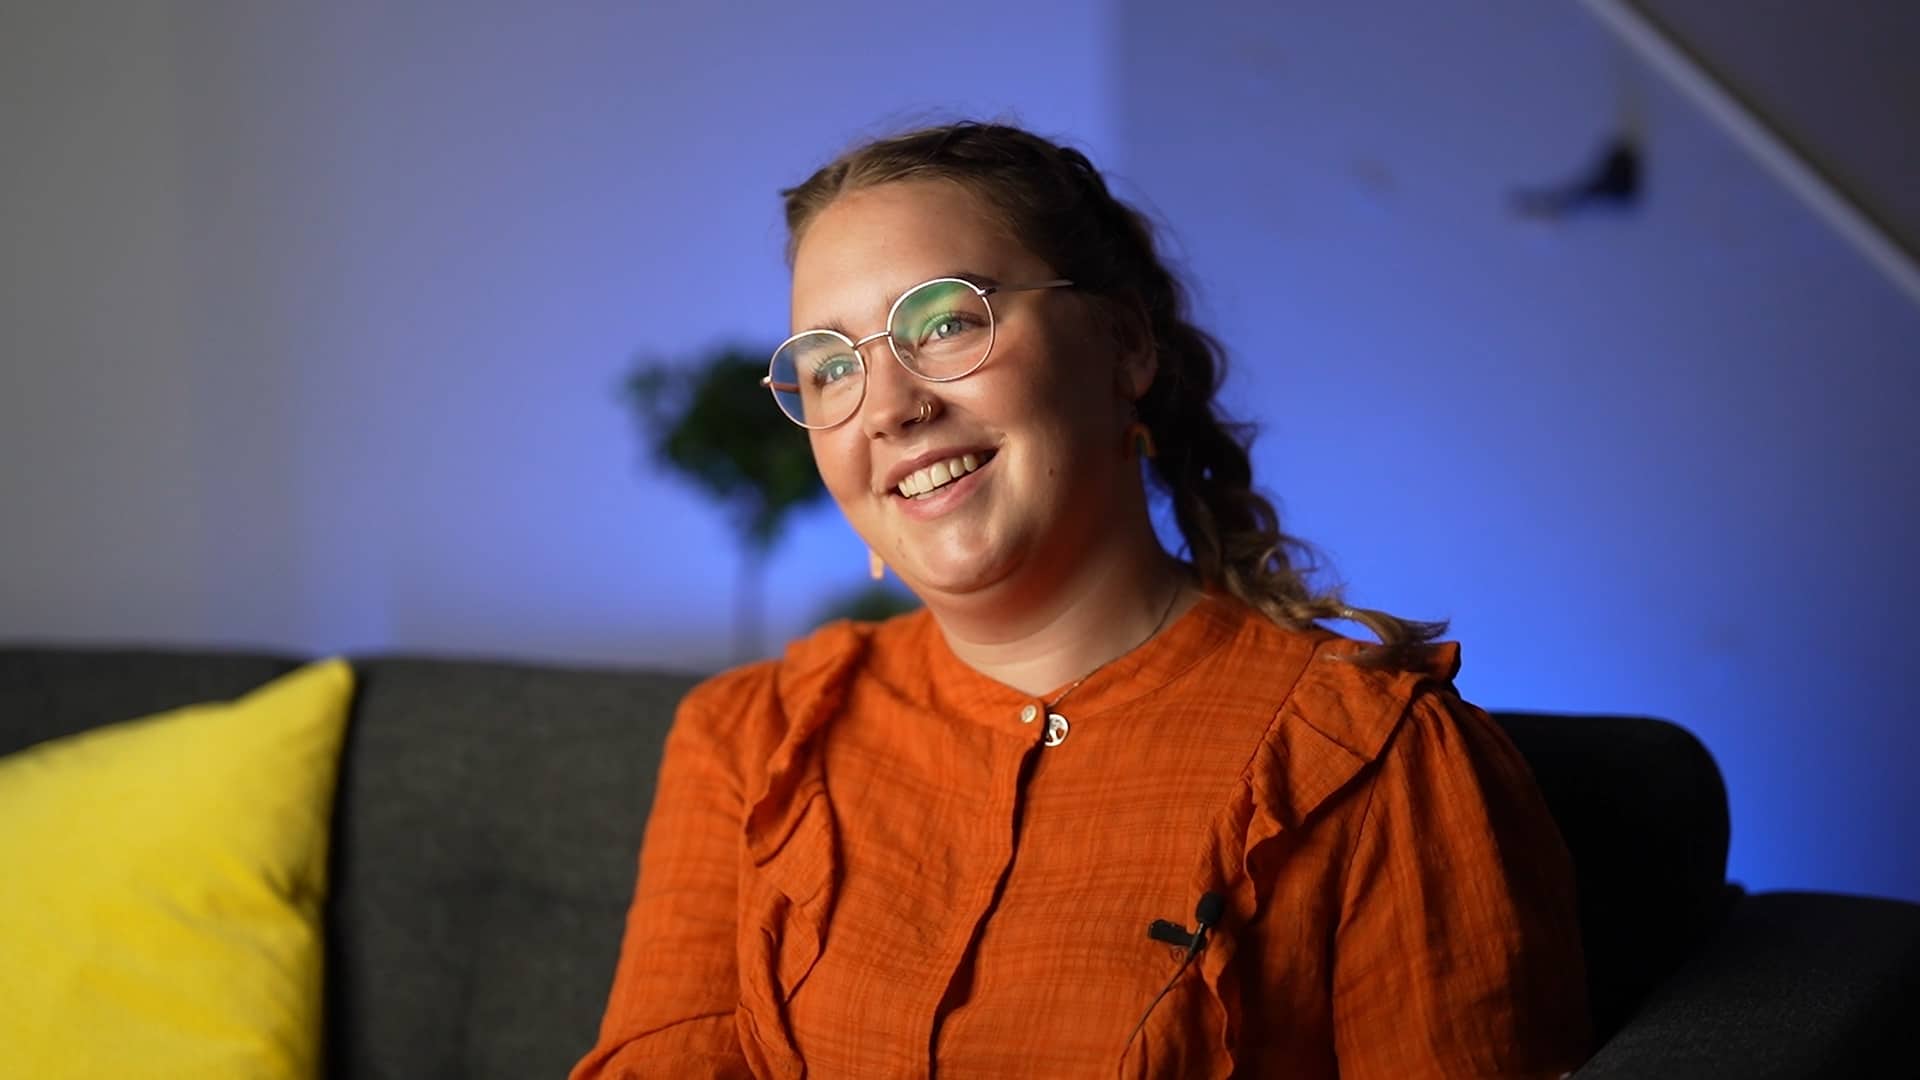 Sara er tidligere elev hos Blå Kors videregående skole Øvebrø. Kvinne med brune fletter, briller og oransje bluse smiler.